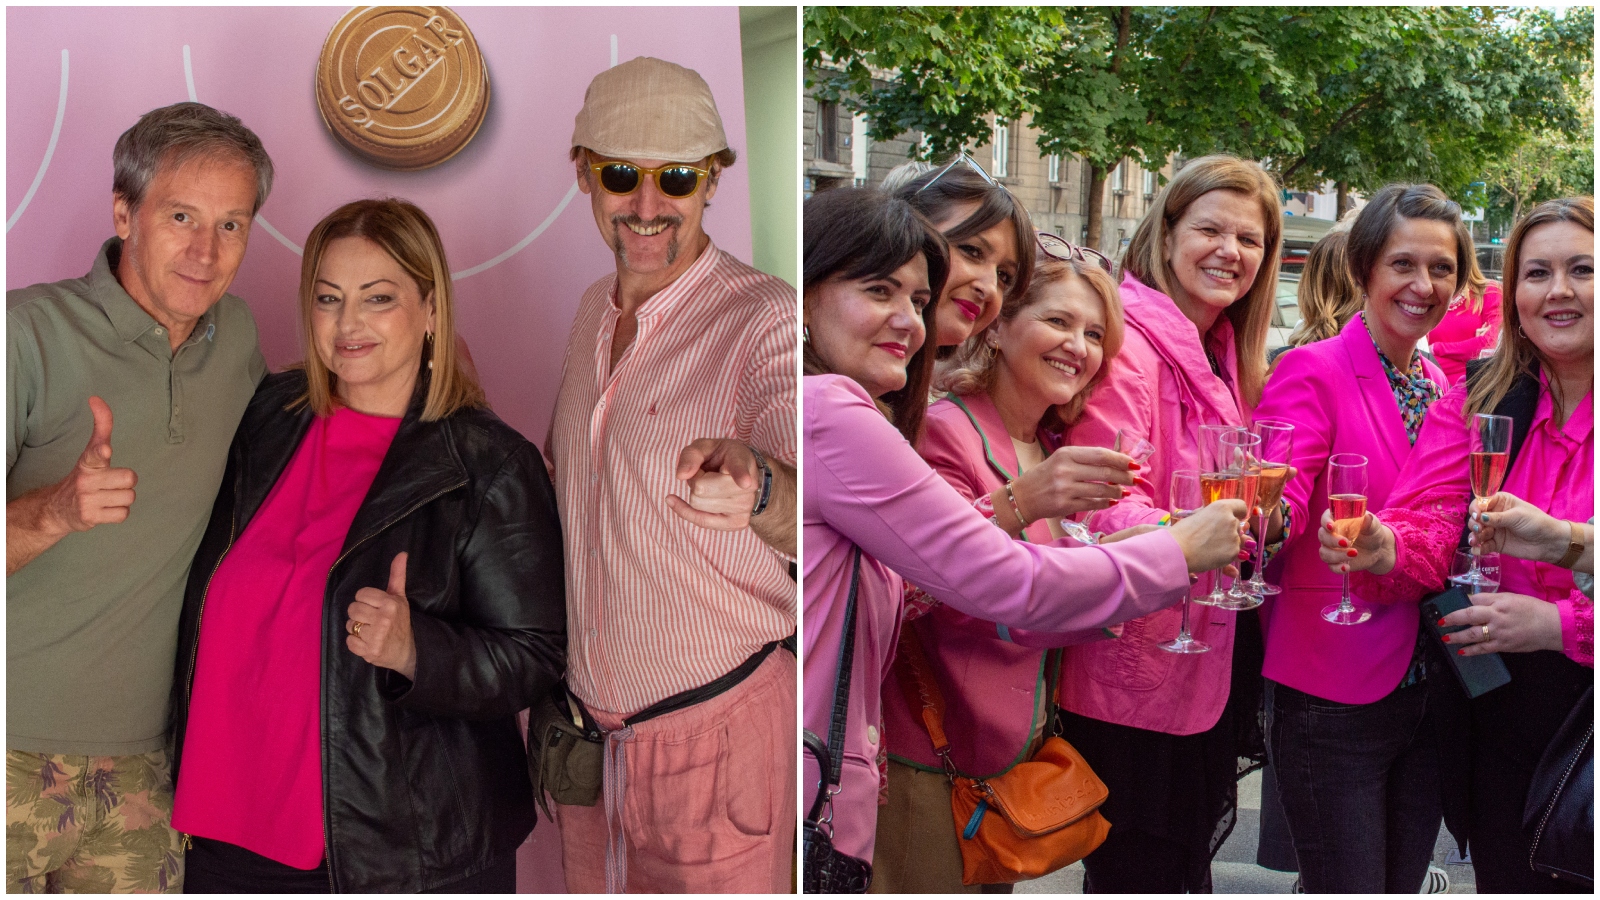 Deset godina potpore ružičastoj vrpci: Održan Ružičasti party u znak podrške oboljelima od raka